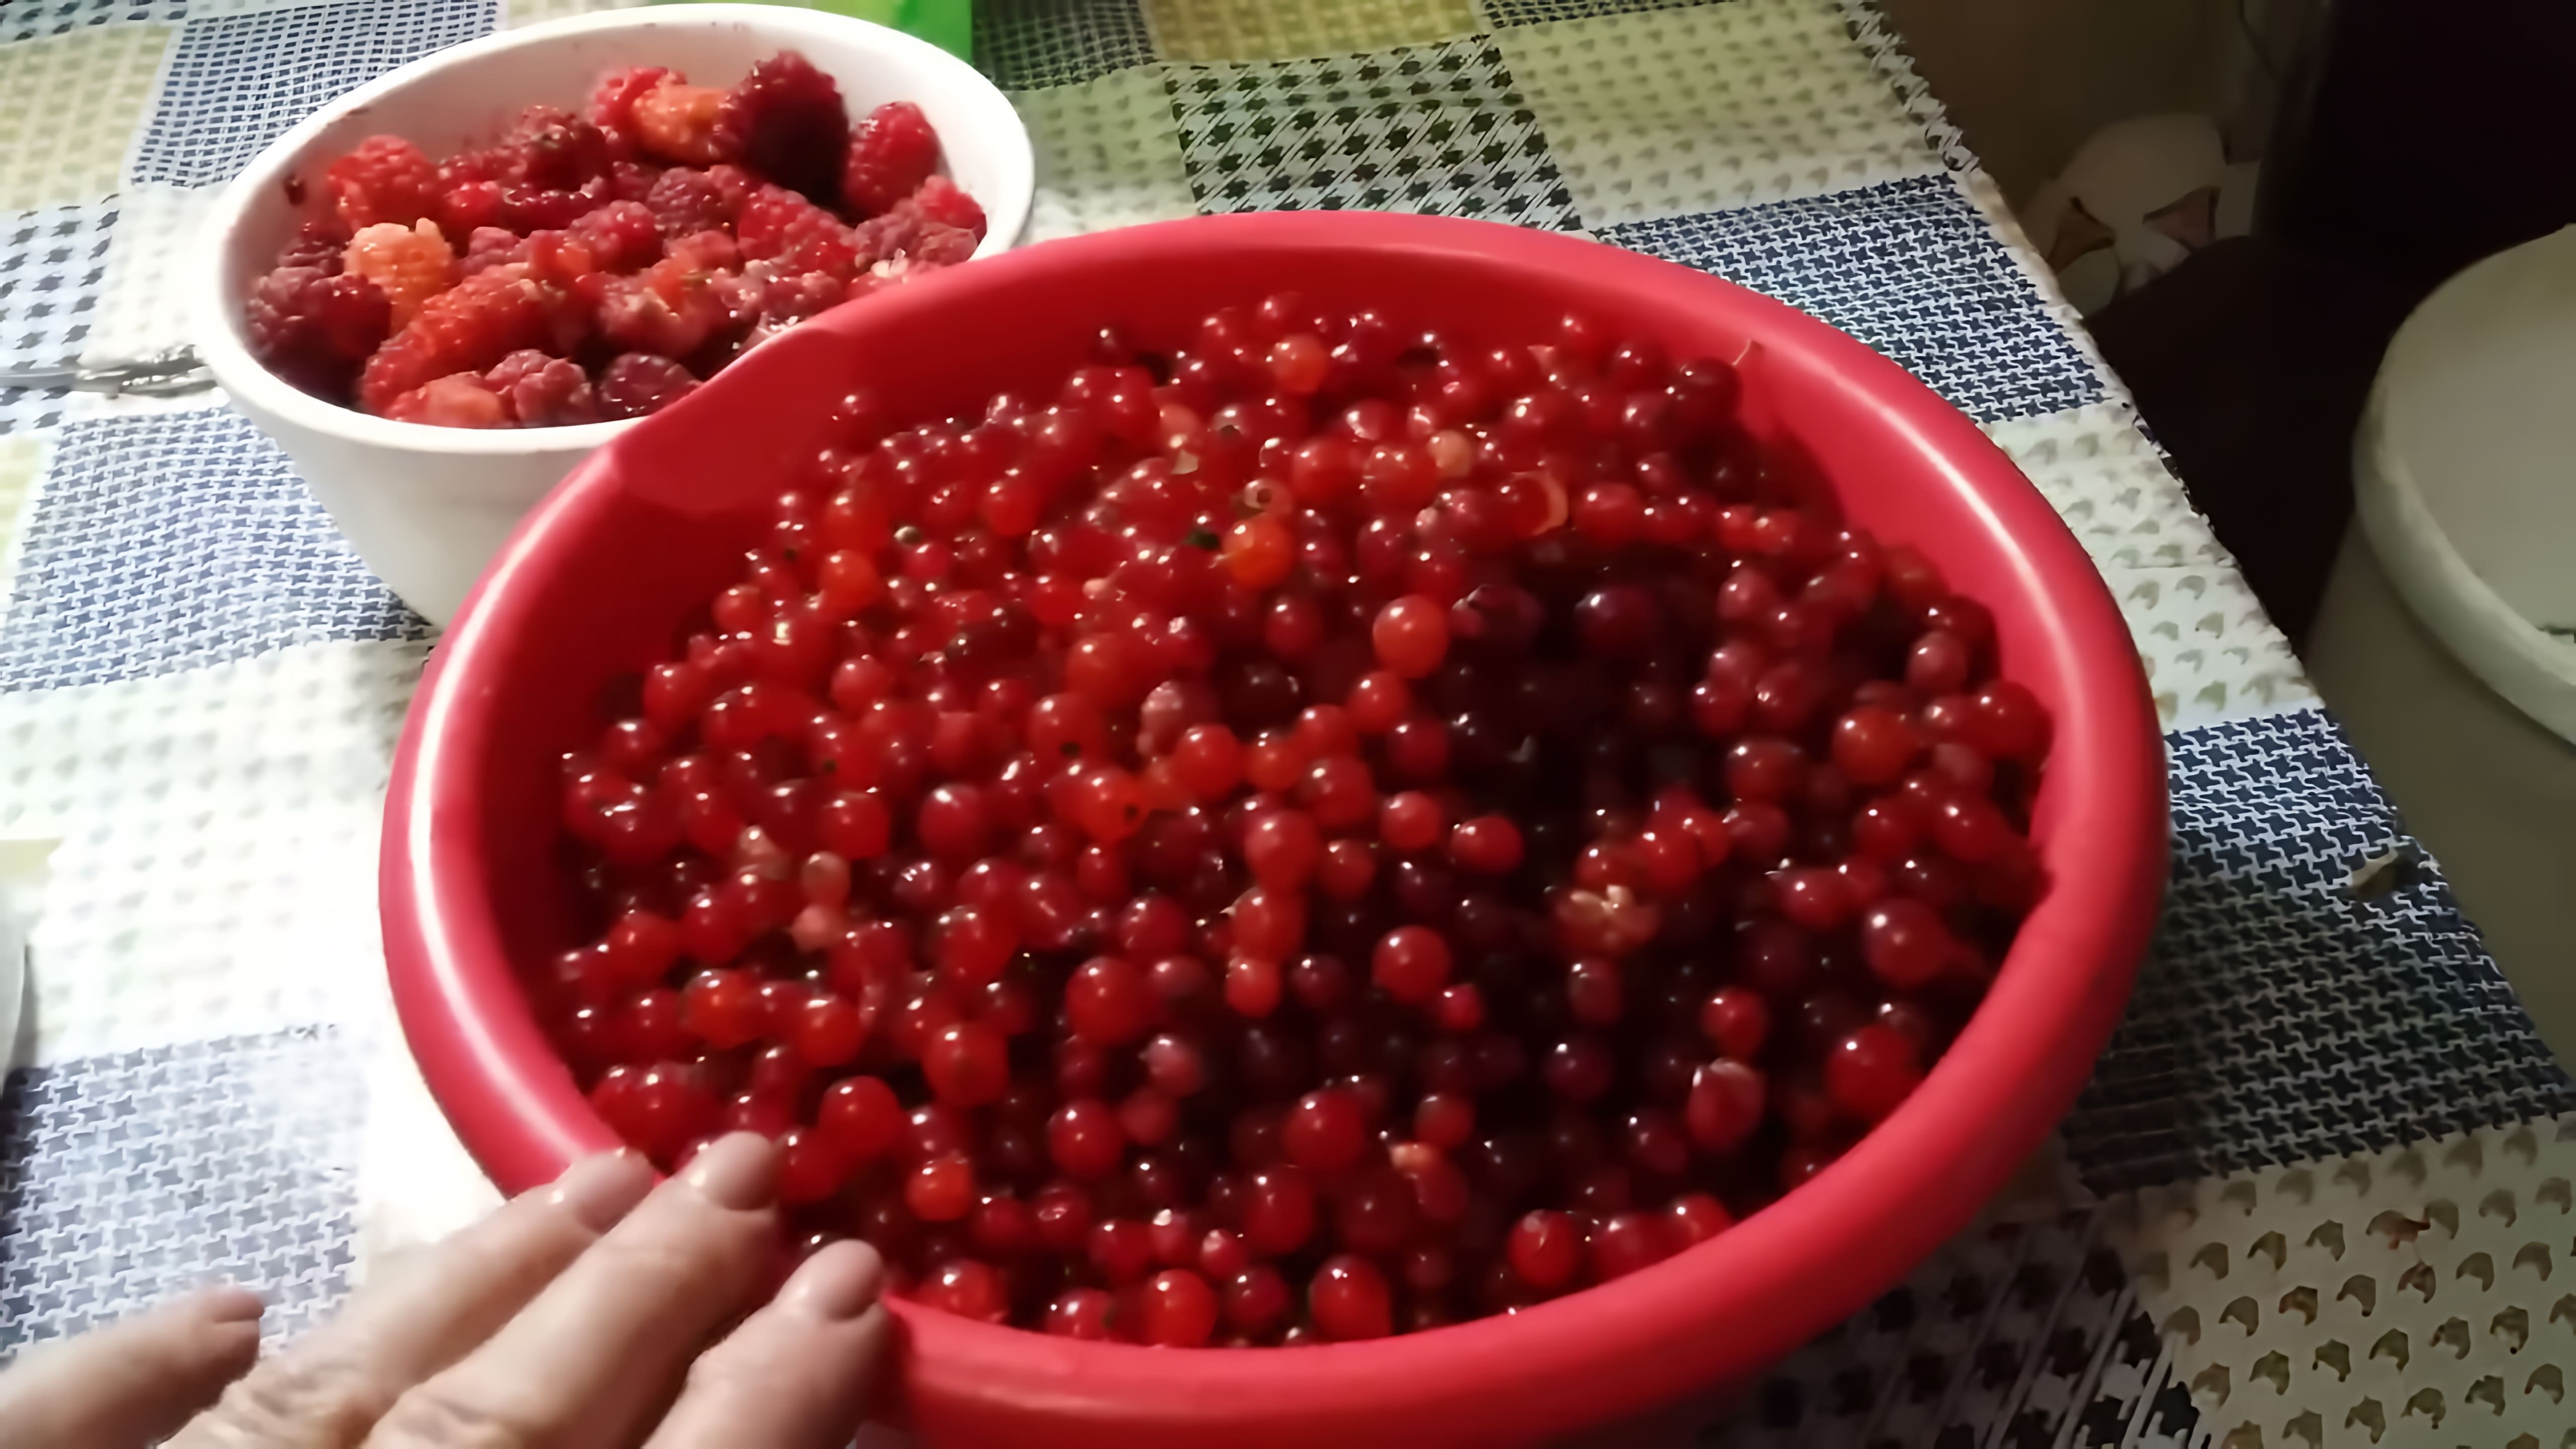 В данном видео демонстрируется процесс заготовки на зиму красной смородины и малины без добавления сахара